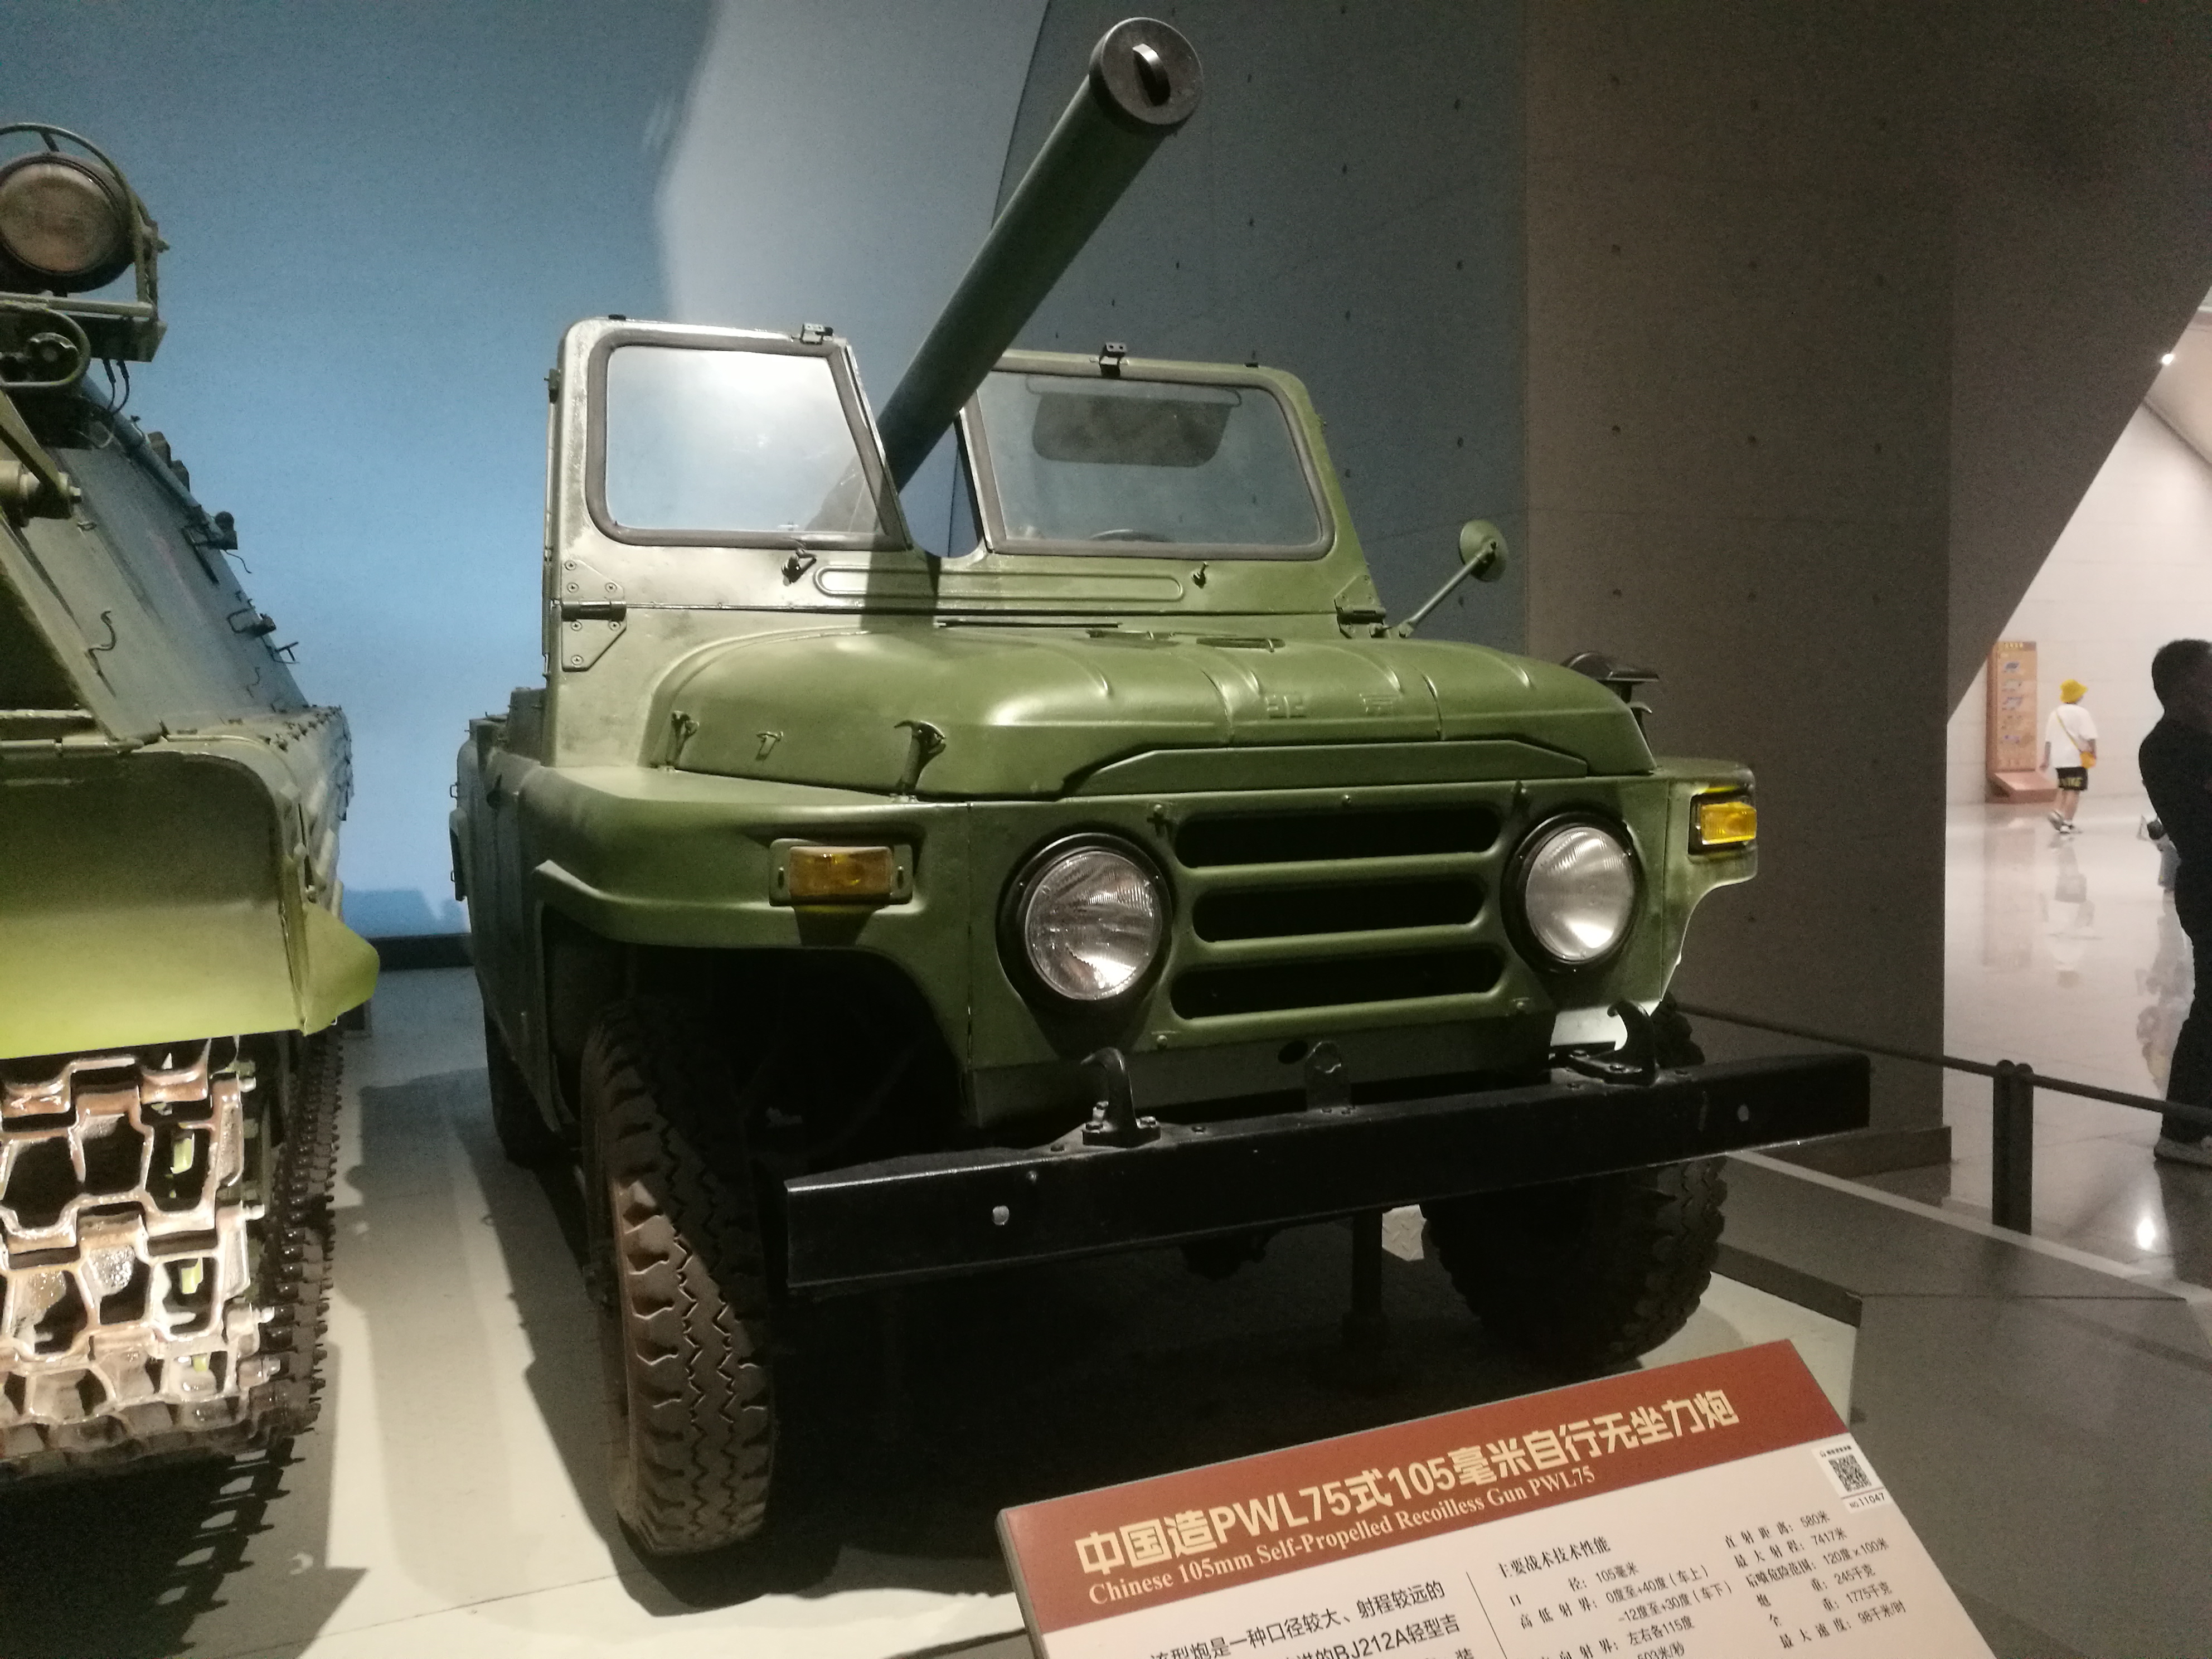 新中国生产的bj212a吉普车,有很强烈的苏联风格